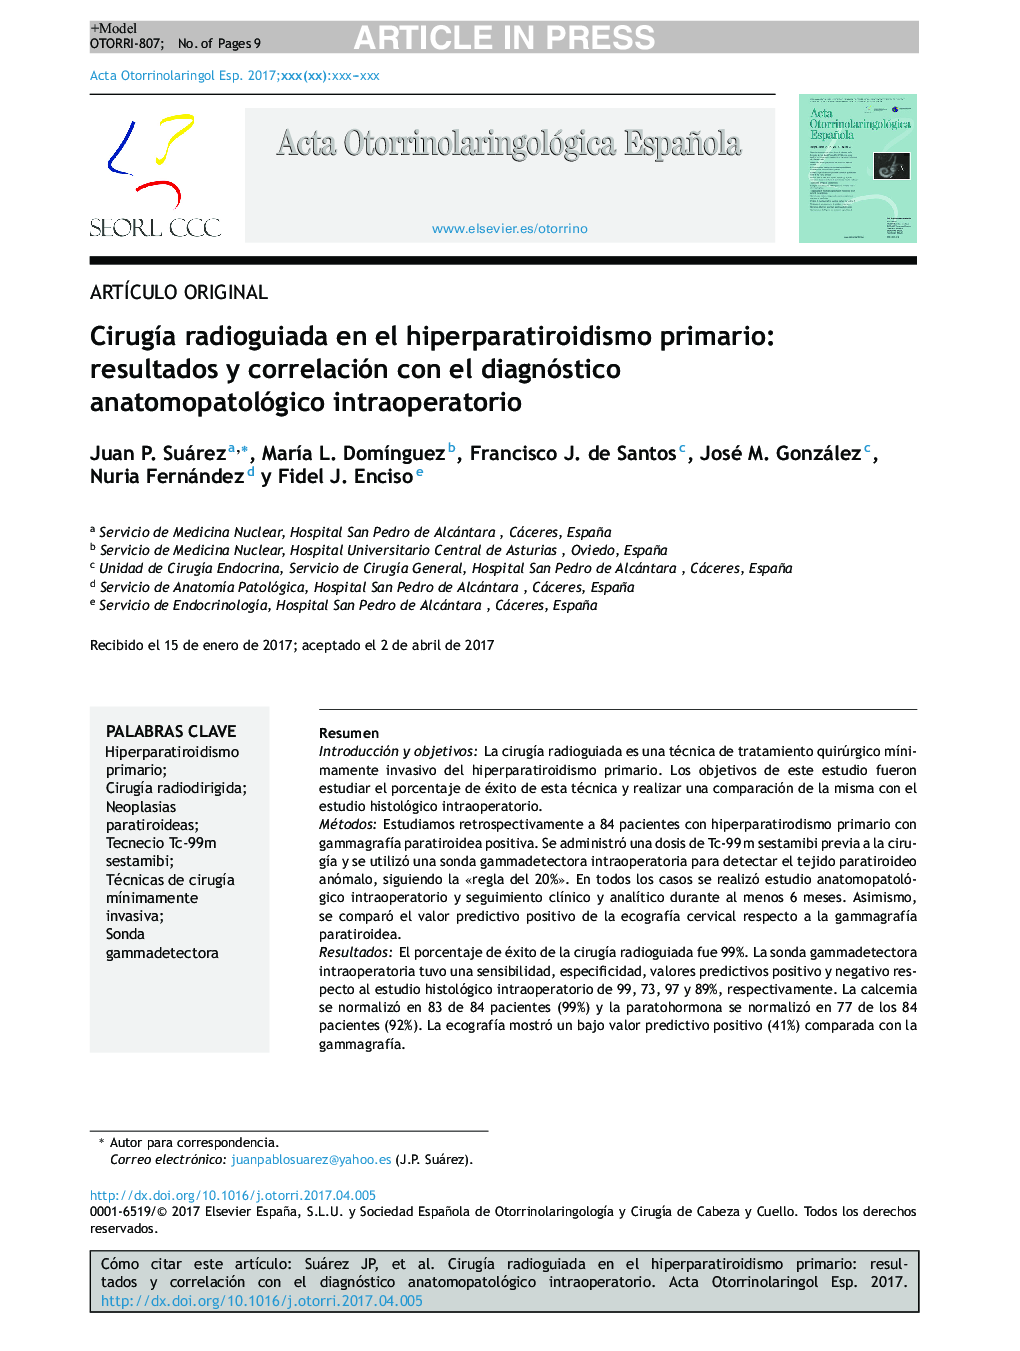 CirugÃ­a radioguiada en el hiperparatiroidismo primario: resultados y correlación con el diagnóstico anatomopatológico intraoperatorio